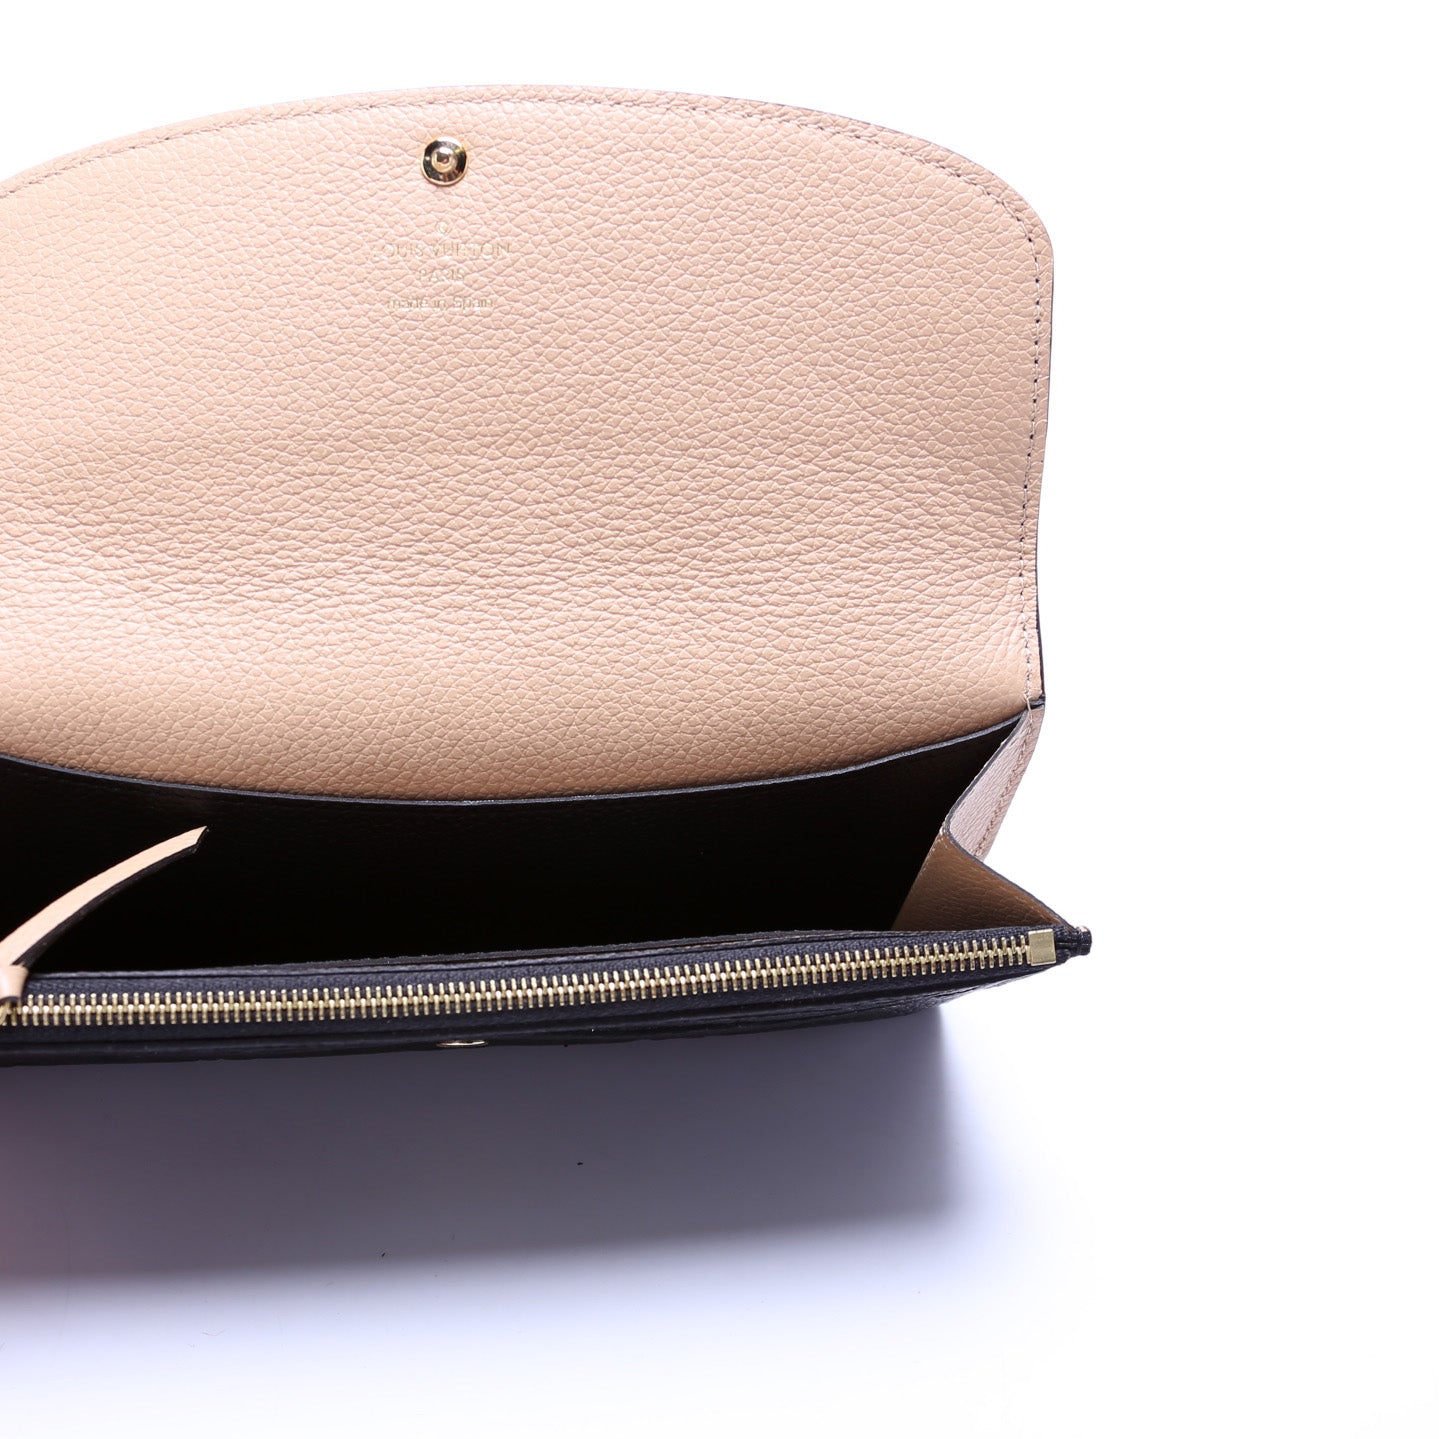 Montaigne BB Empreinte – Keeks Designer Handbags